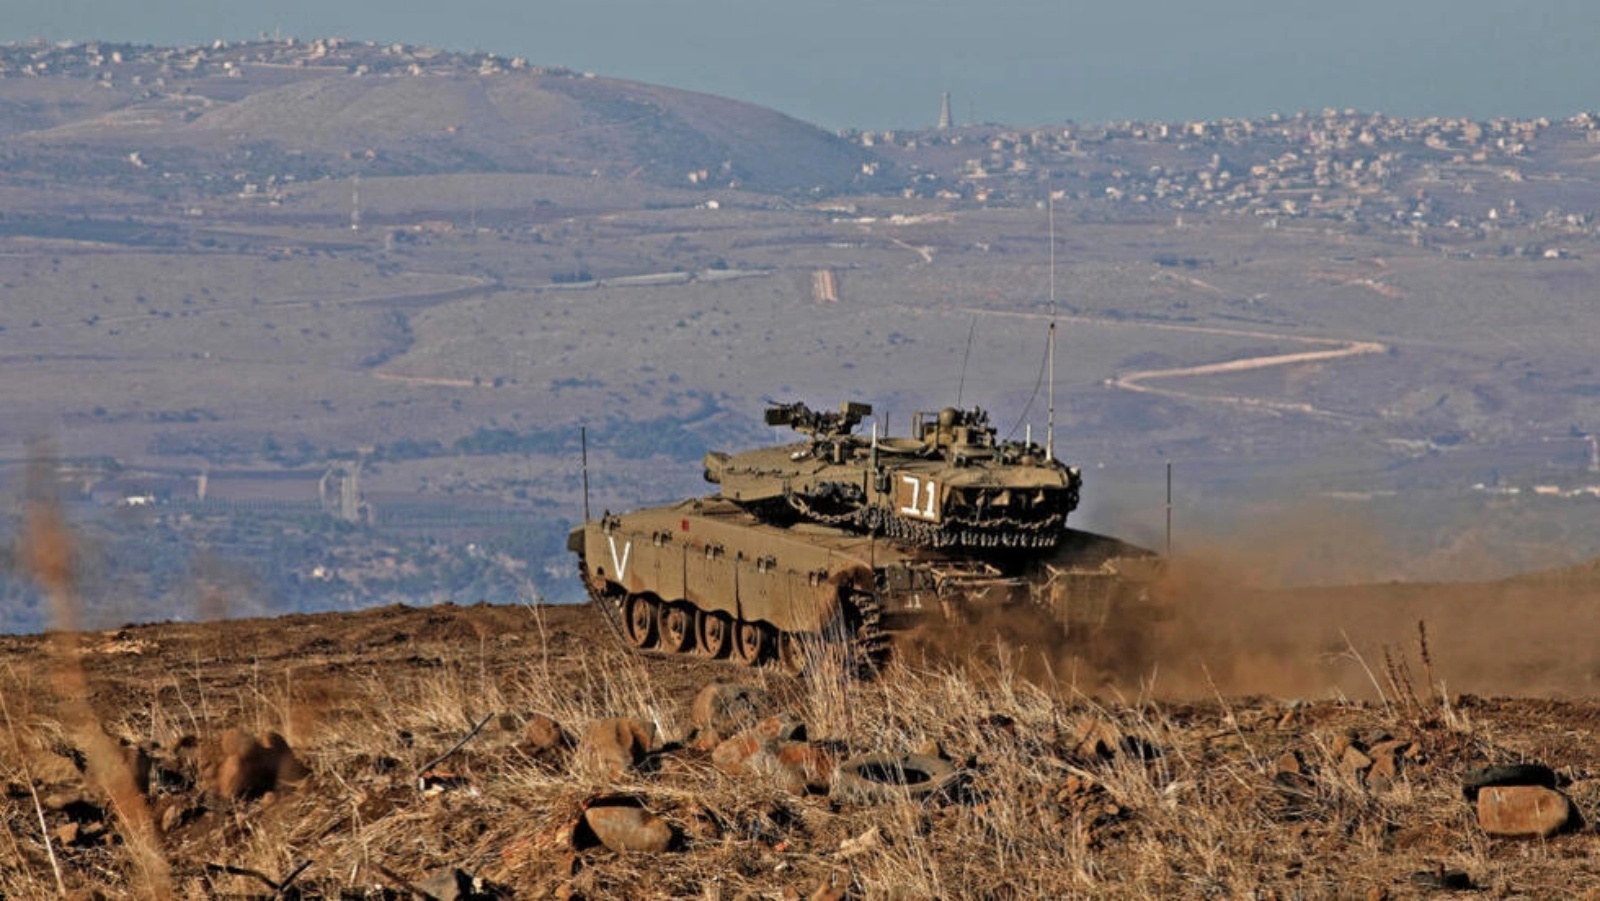  آلية عسكرية قرب الحدود السورية الإسرائيلية - أرشيف آلية عسكرية قرب الحدود السورية الإسرائيلية